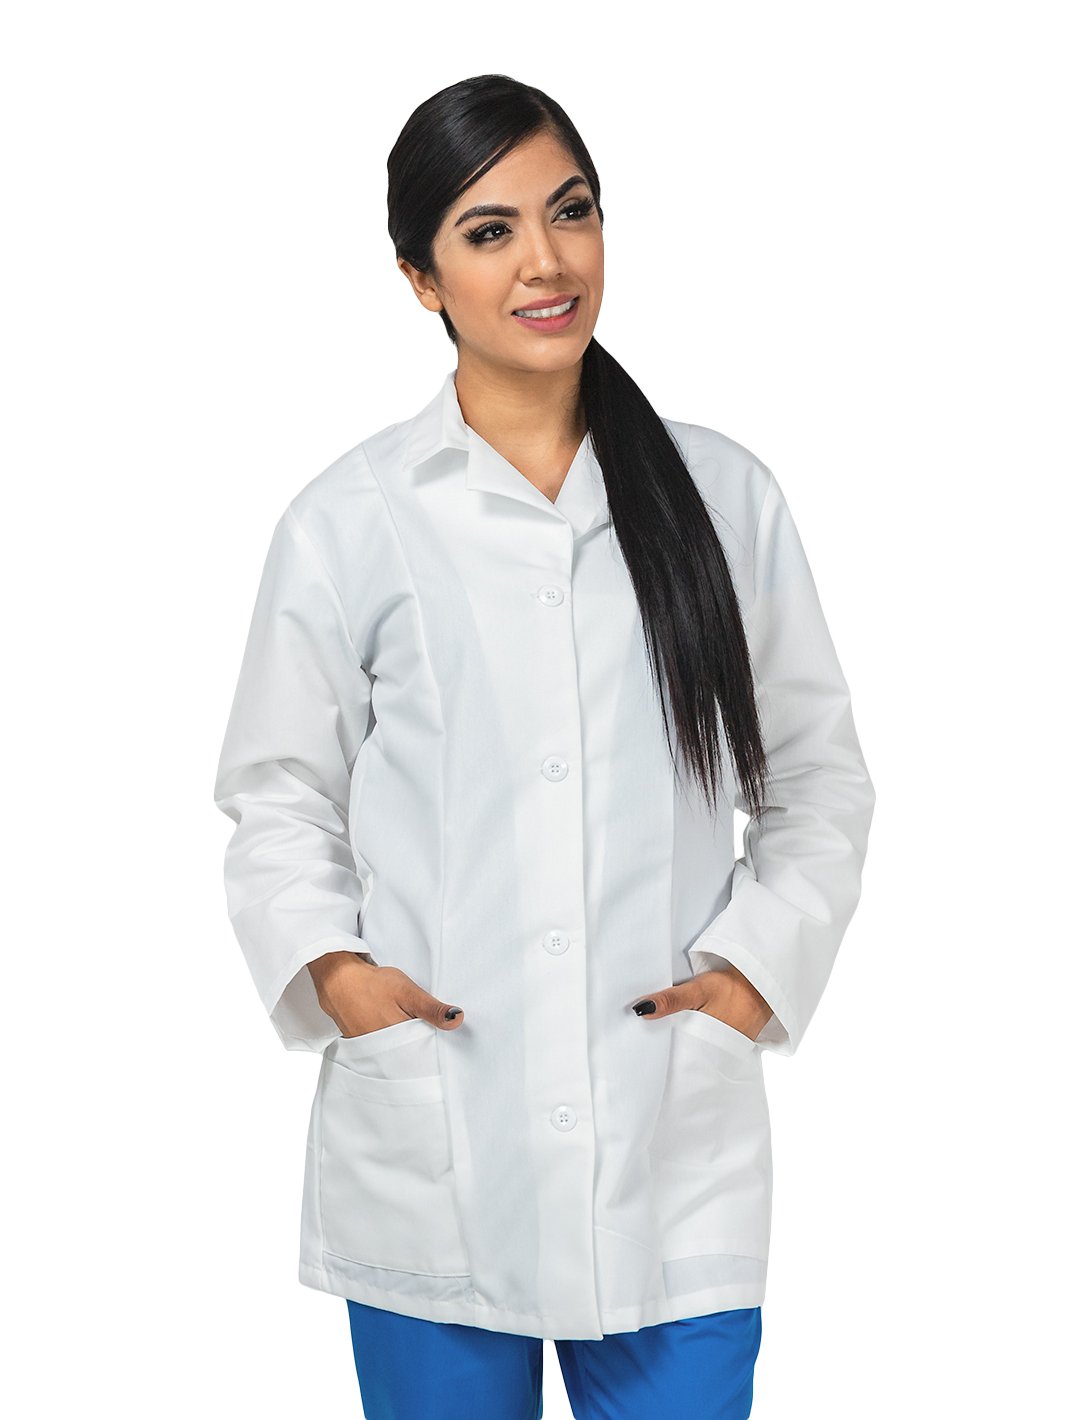 Mujer con bata blanca de laboratorio para mujer de uso médico con corte princesa, cuatro botones, moño decorativo en espalda, y bolsas frontales.